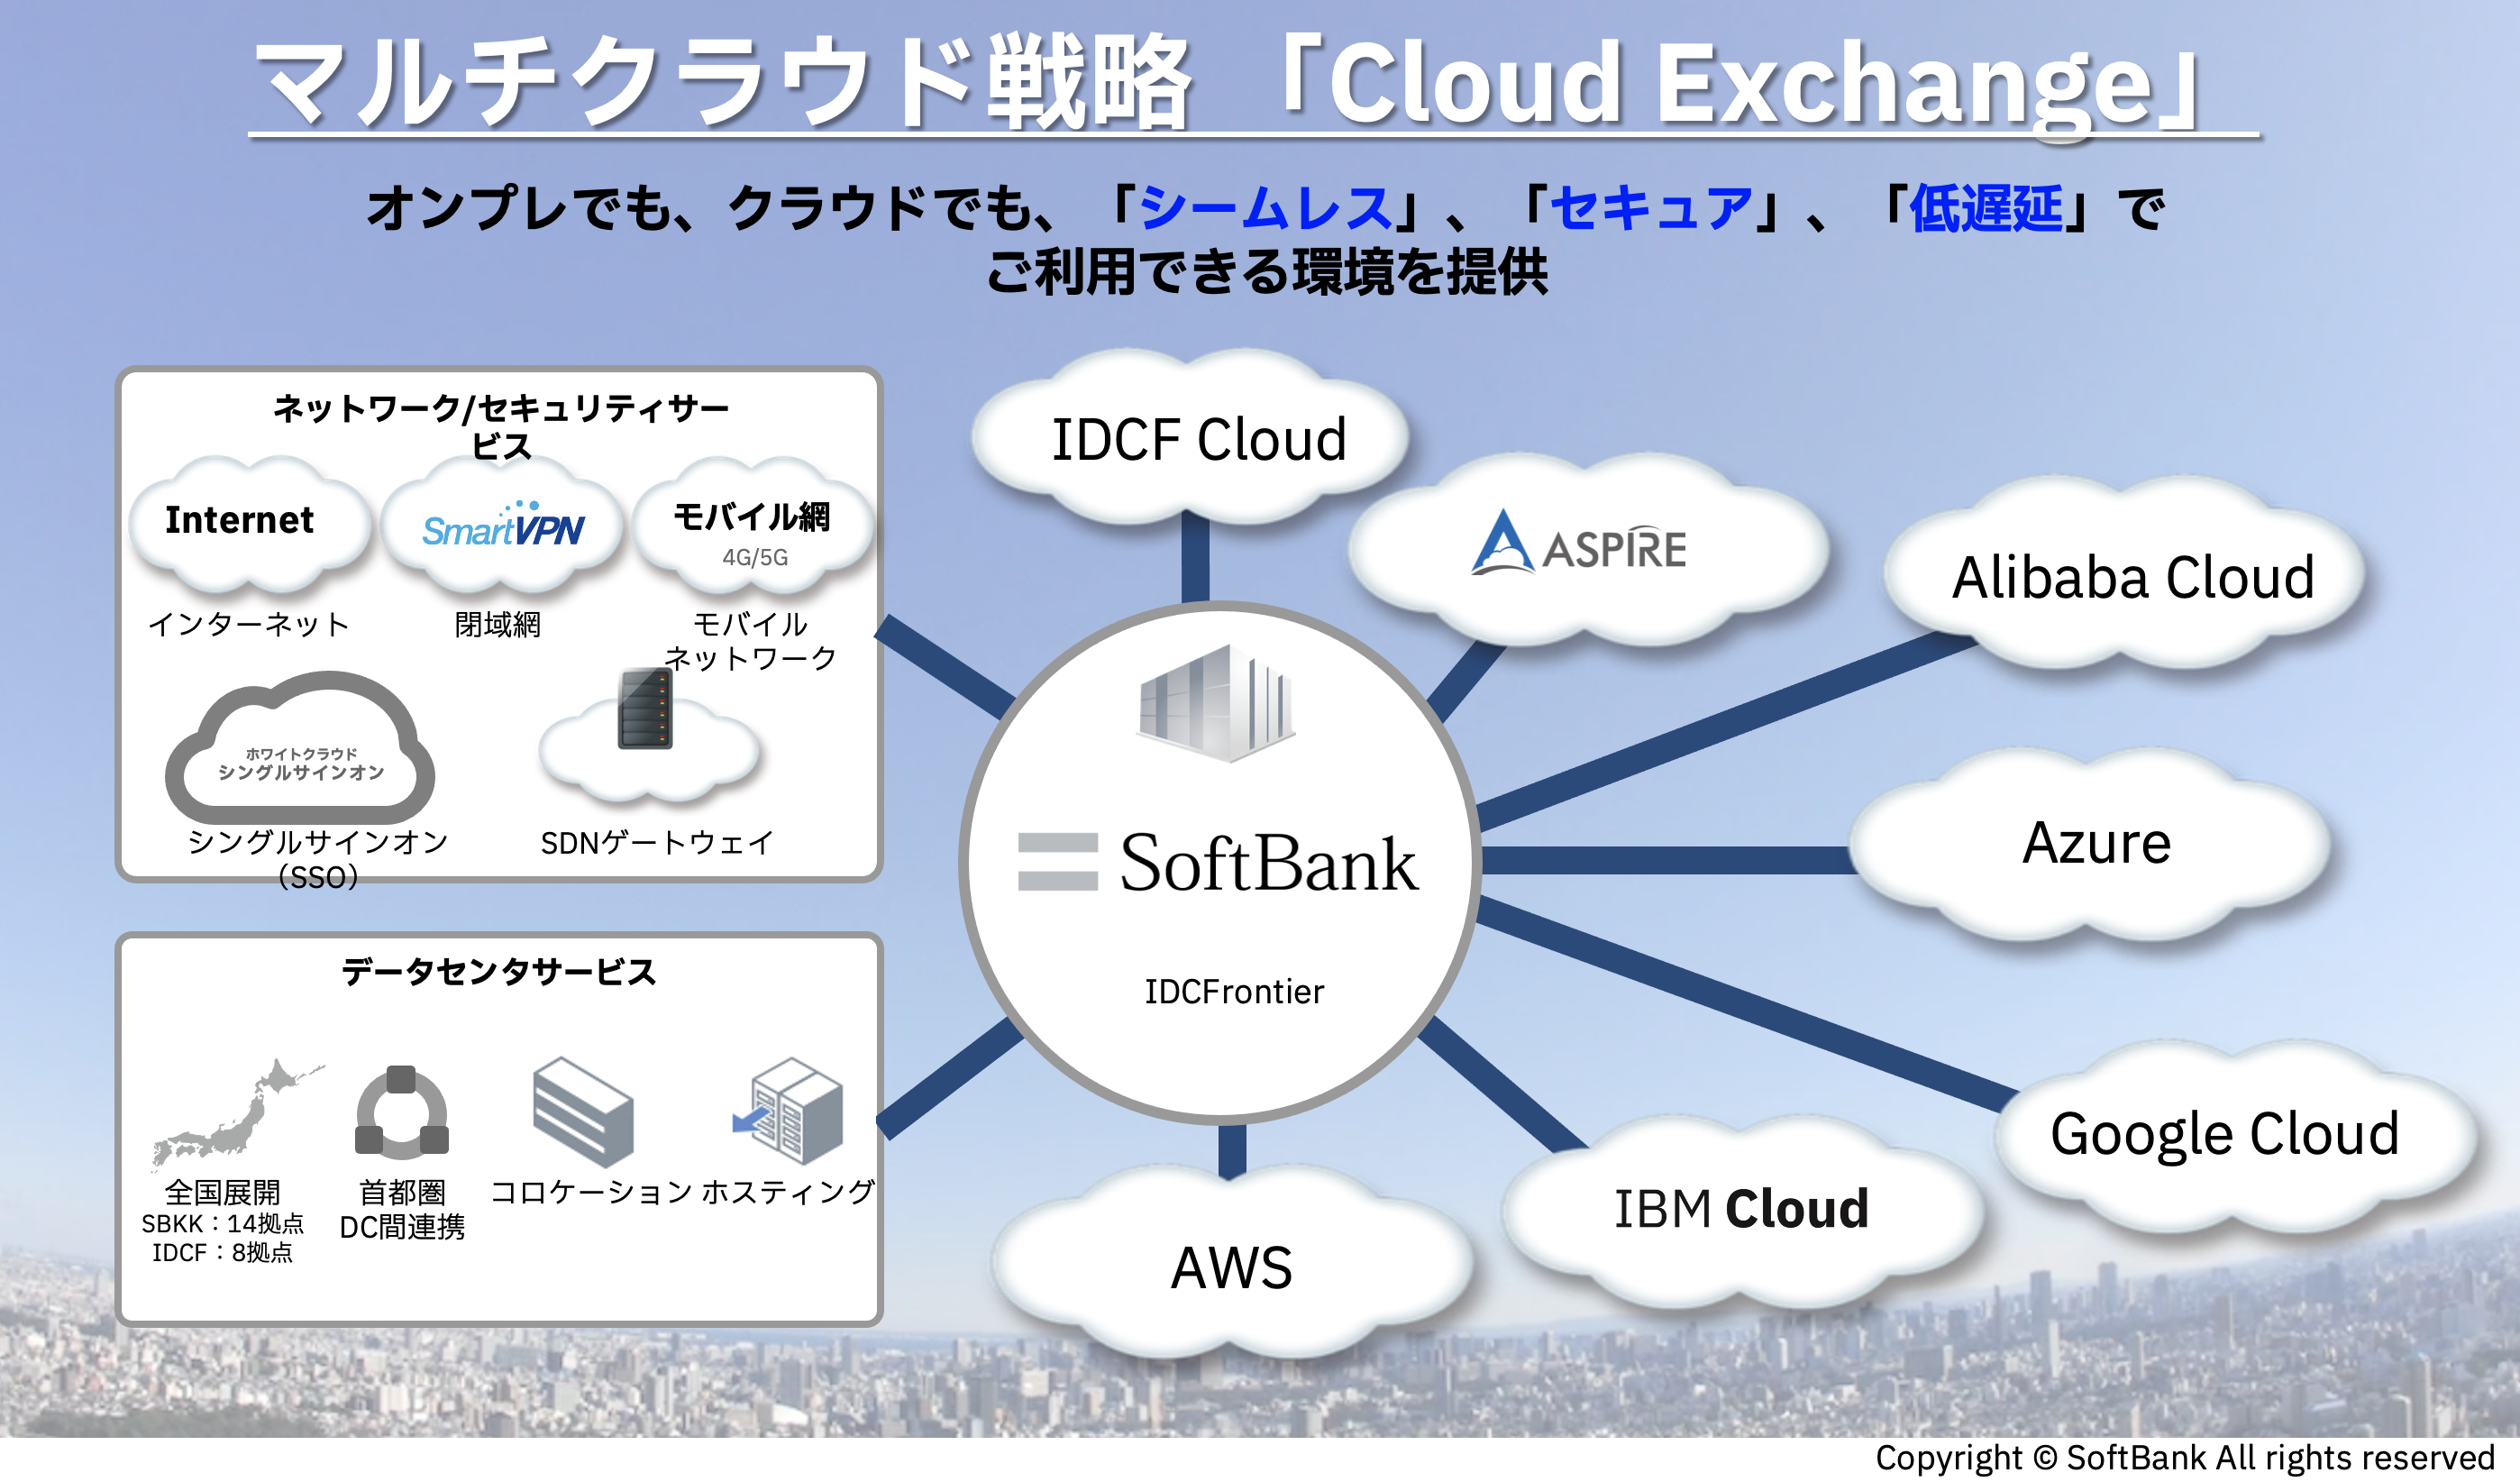 Softbank Cloud Exchange